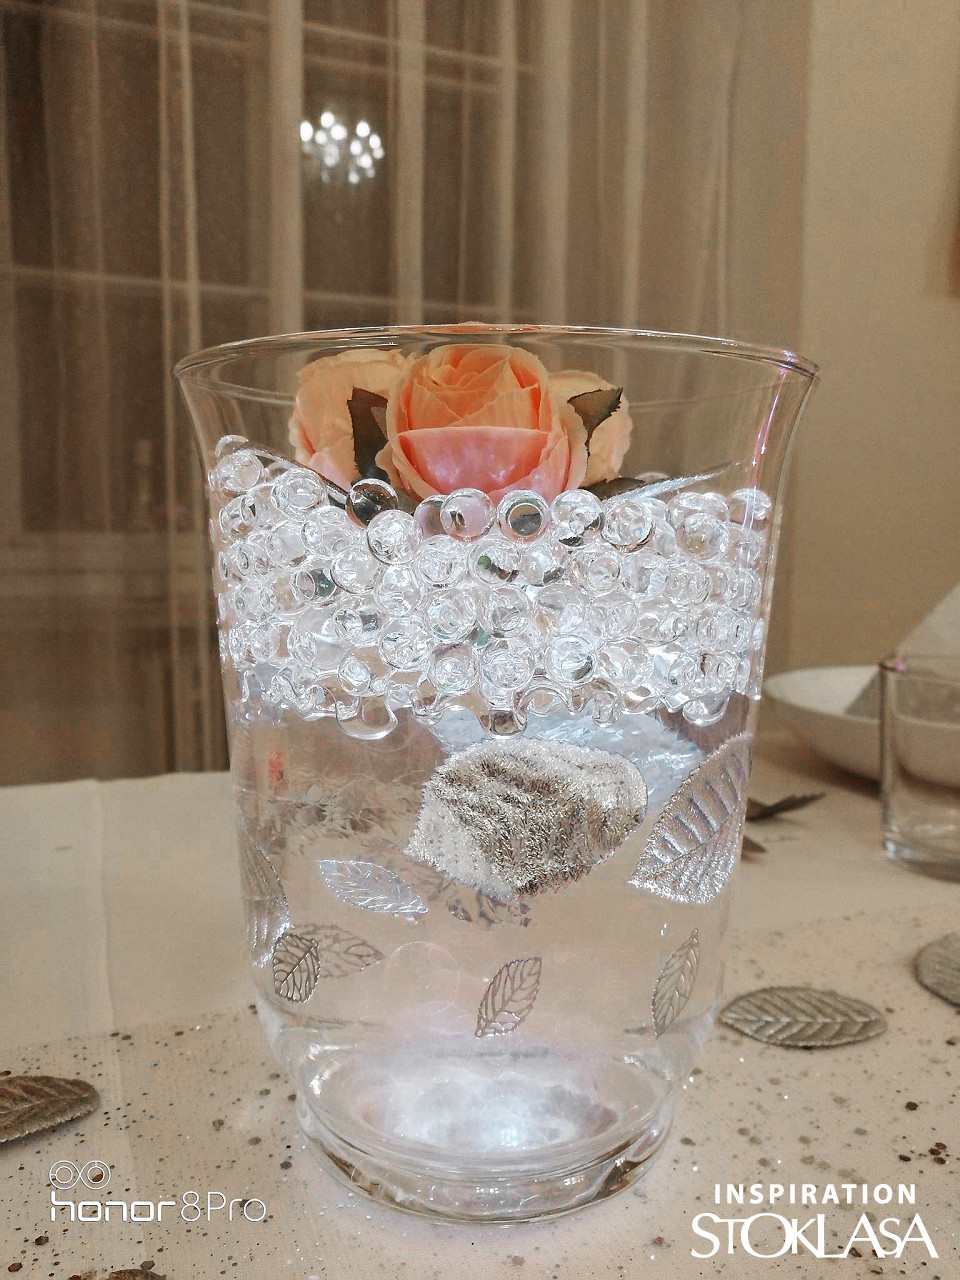 Perles d'eau - Billes en gel pour vase, 10 g